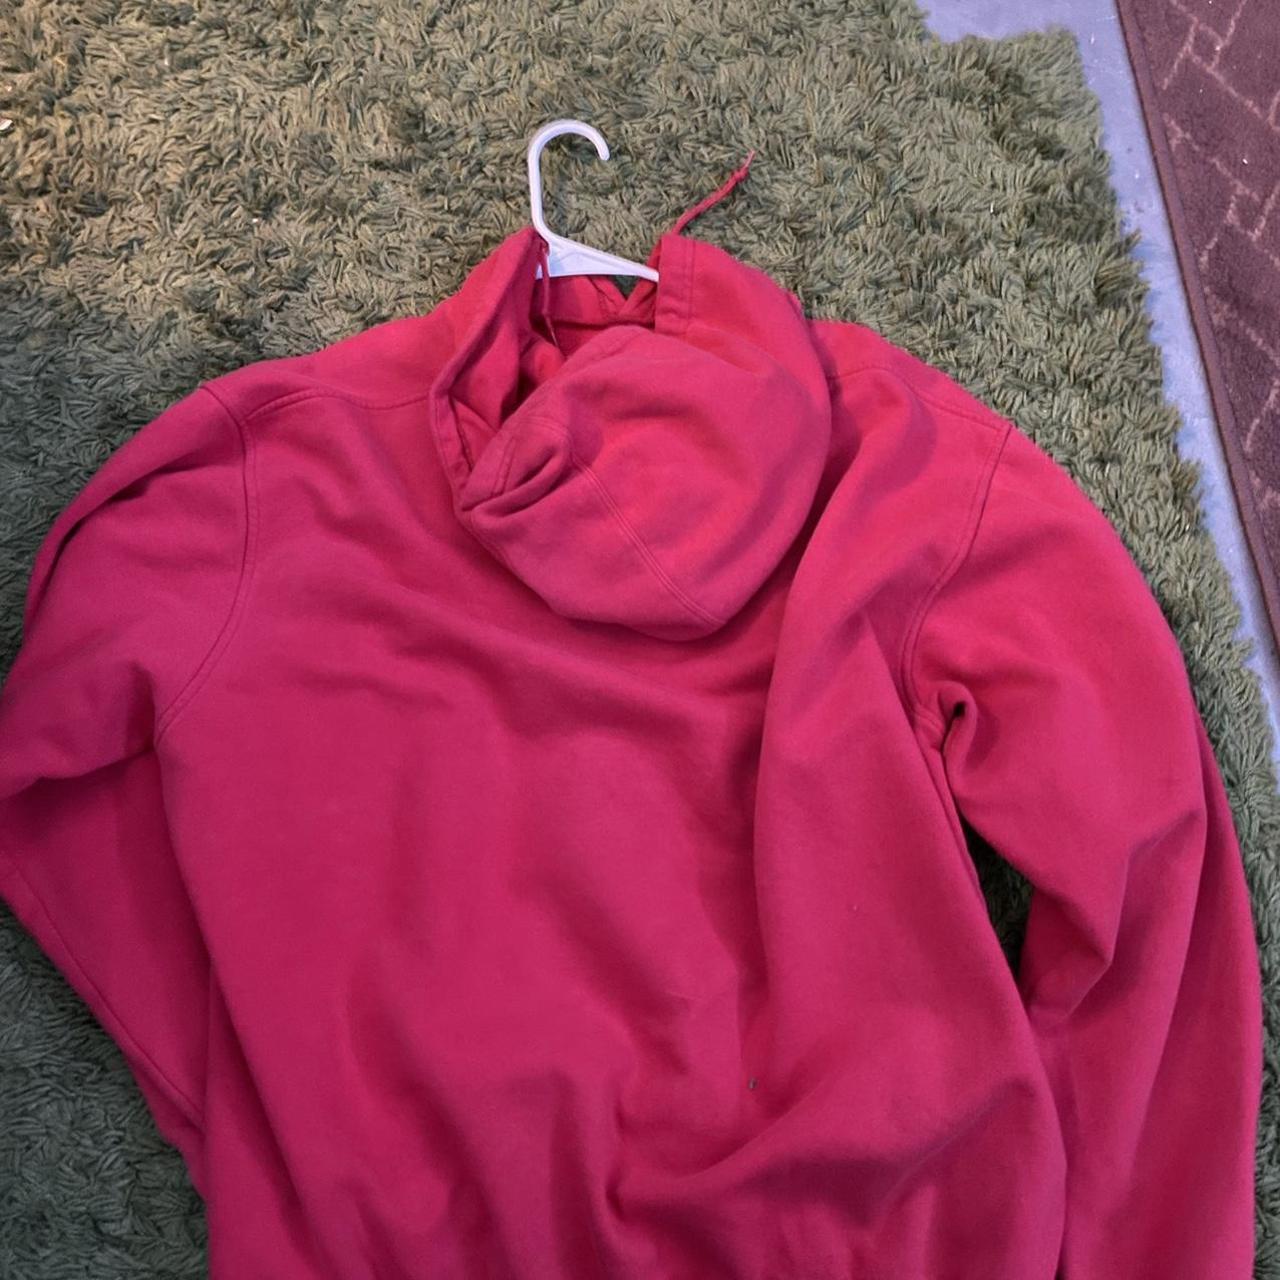 Red Nike hoodie size XL. Vintage red Nike... - Depop